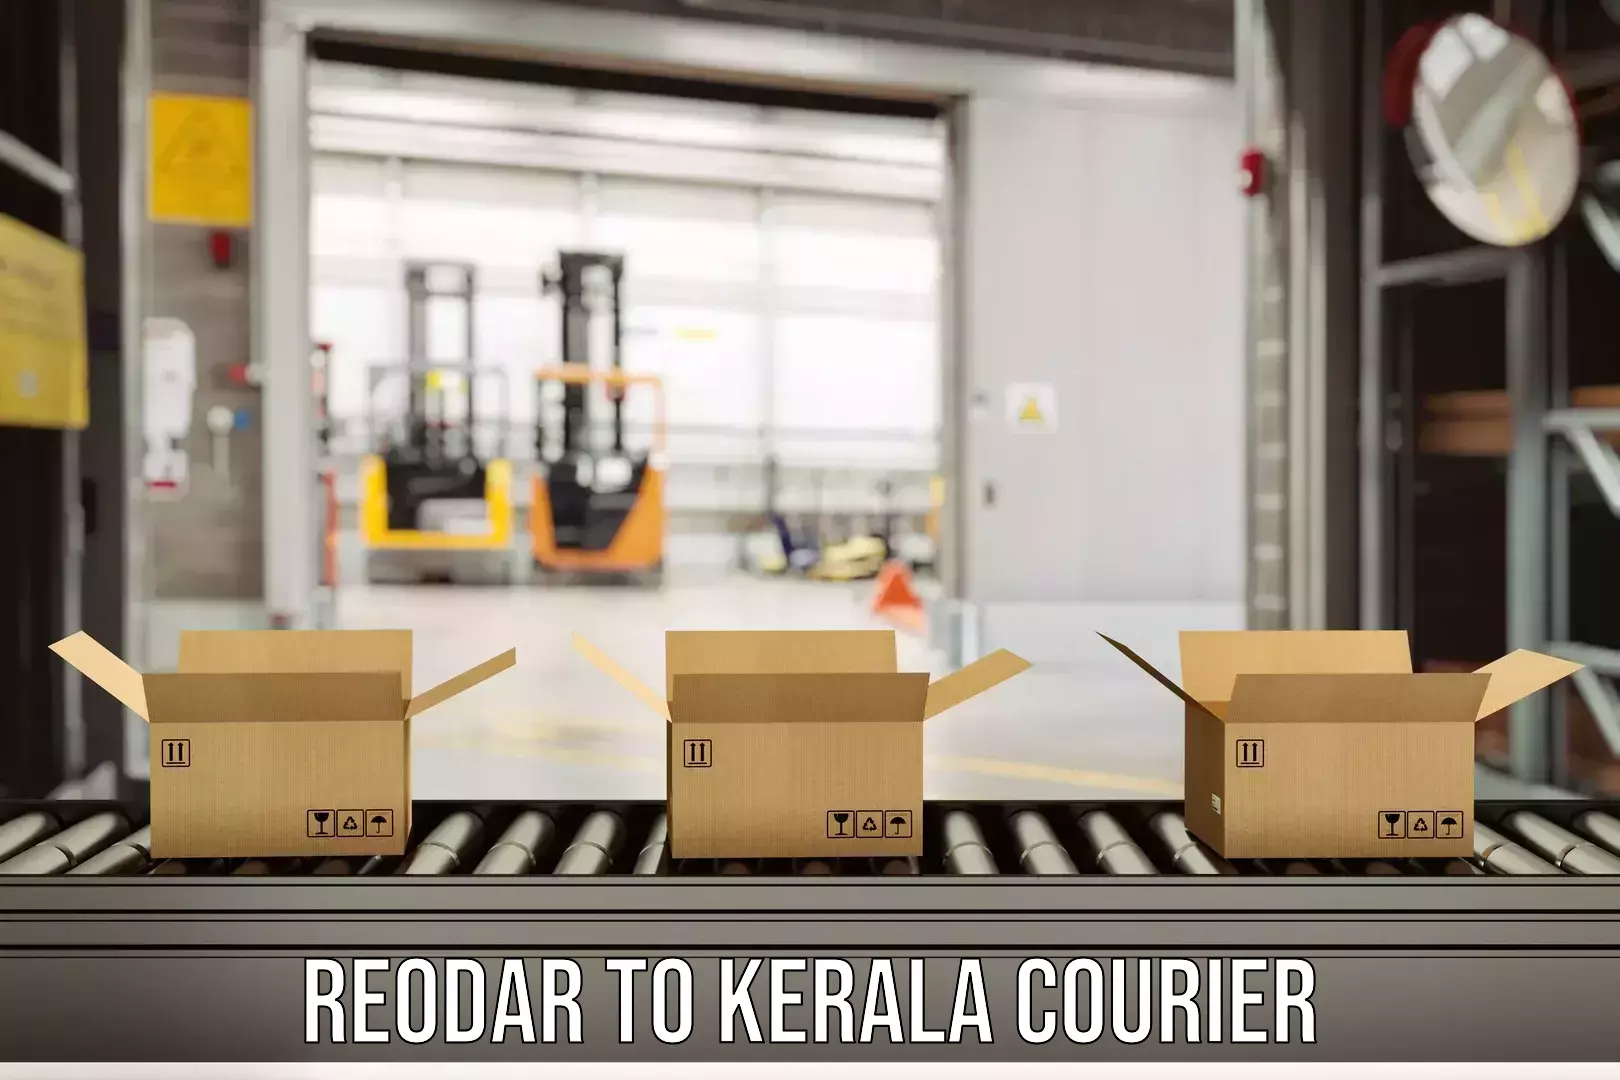 Courier service comparison Reodar to Cochin Port Kochi